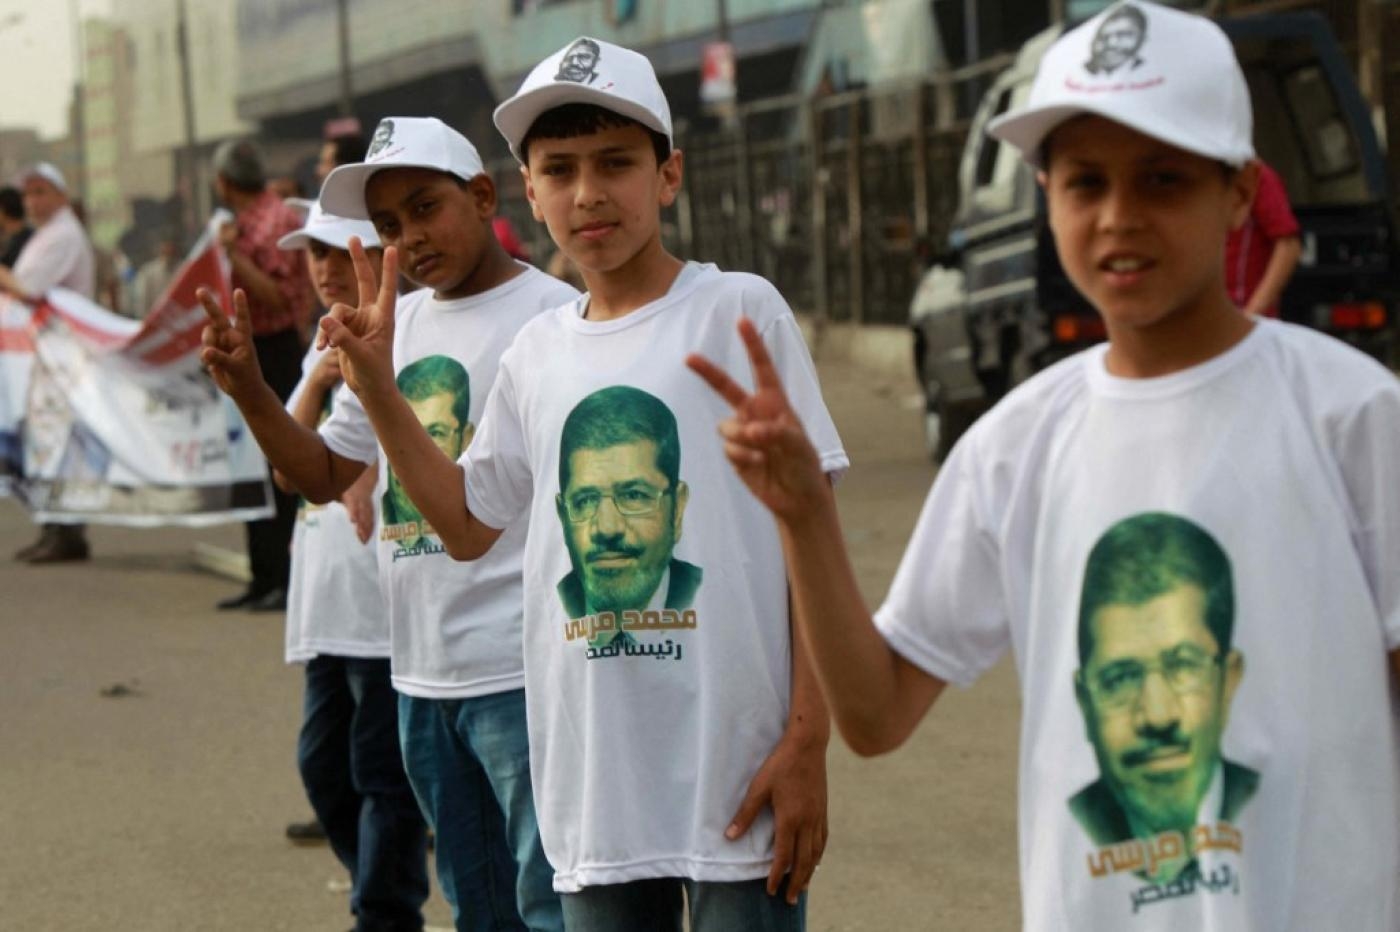 De jeunes partisans des Frères musulmans en Égypte photographiés au Caire, en 2012 (AFP)